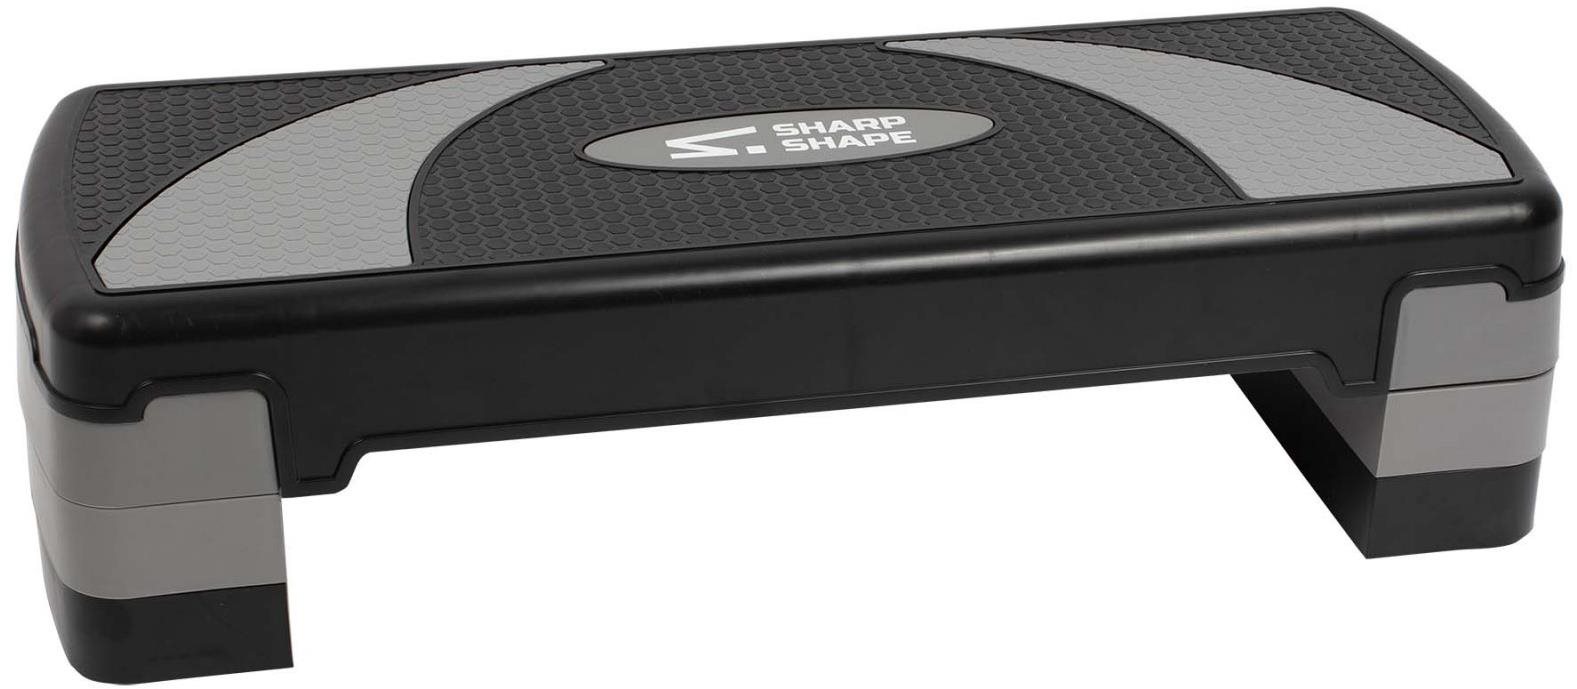 Sharp Shape Aerobic step SH300